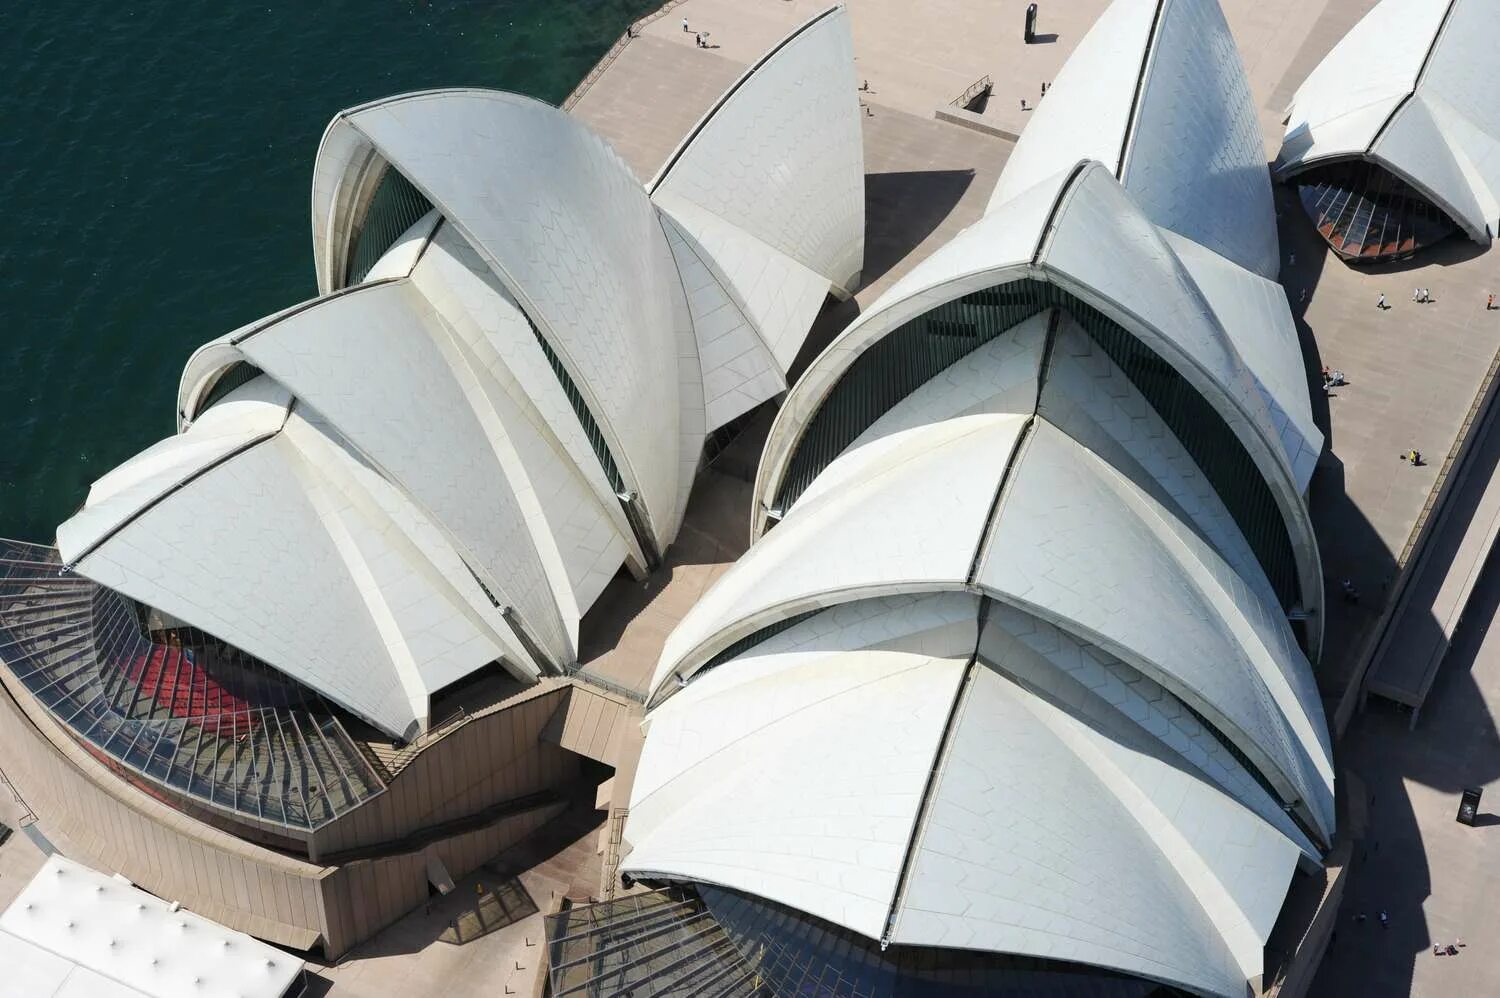 Йорн Уотзон оперный театр в Сиднее. Сиднейская опера Архитектор. Сиднейский оперный театр Австралия. Сидней театр Утзон. Бетонные своды